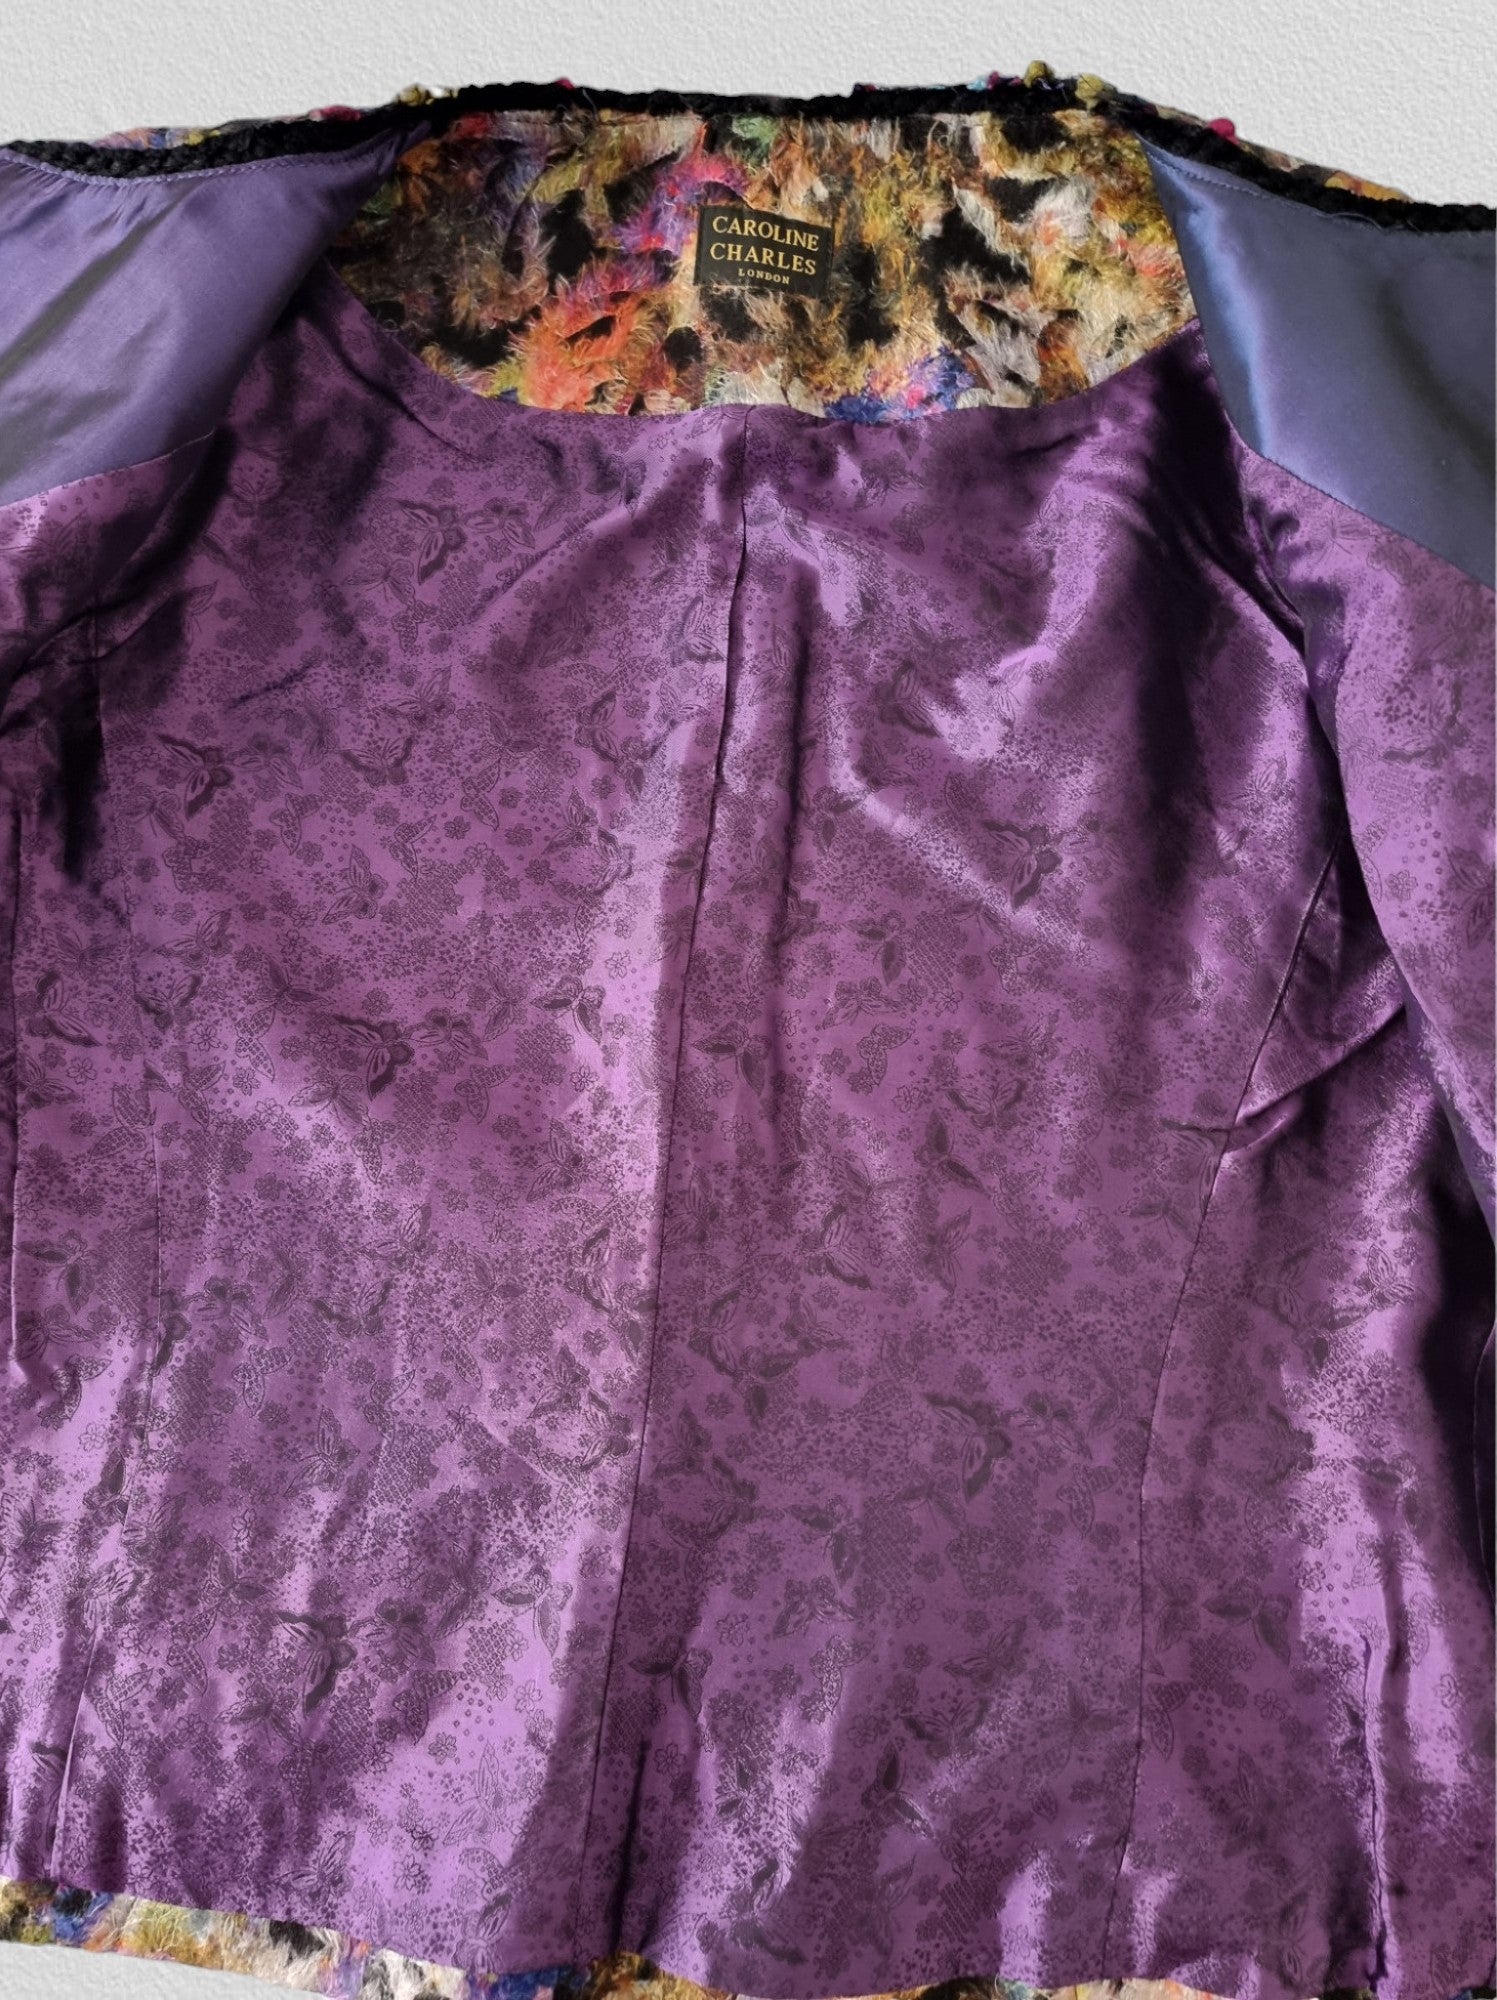 Caroline Charles Multicoloured Floral Jacket UK16 US 12 EU 44 Timeless Fashions